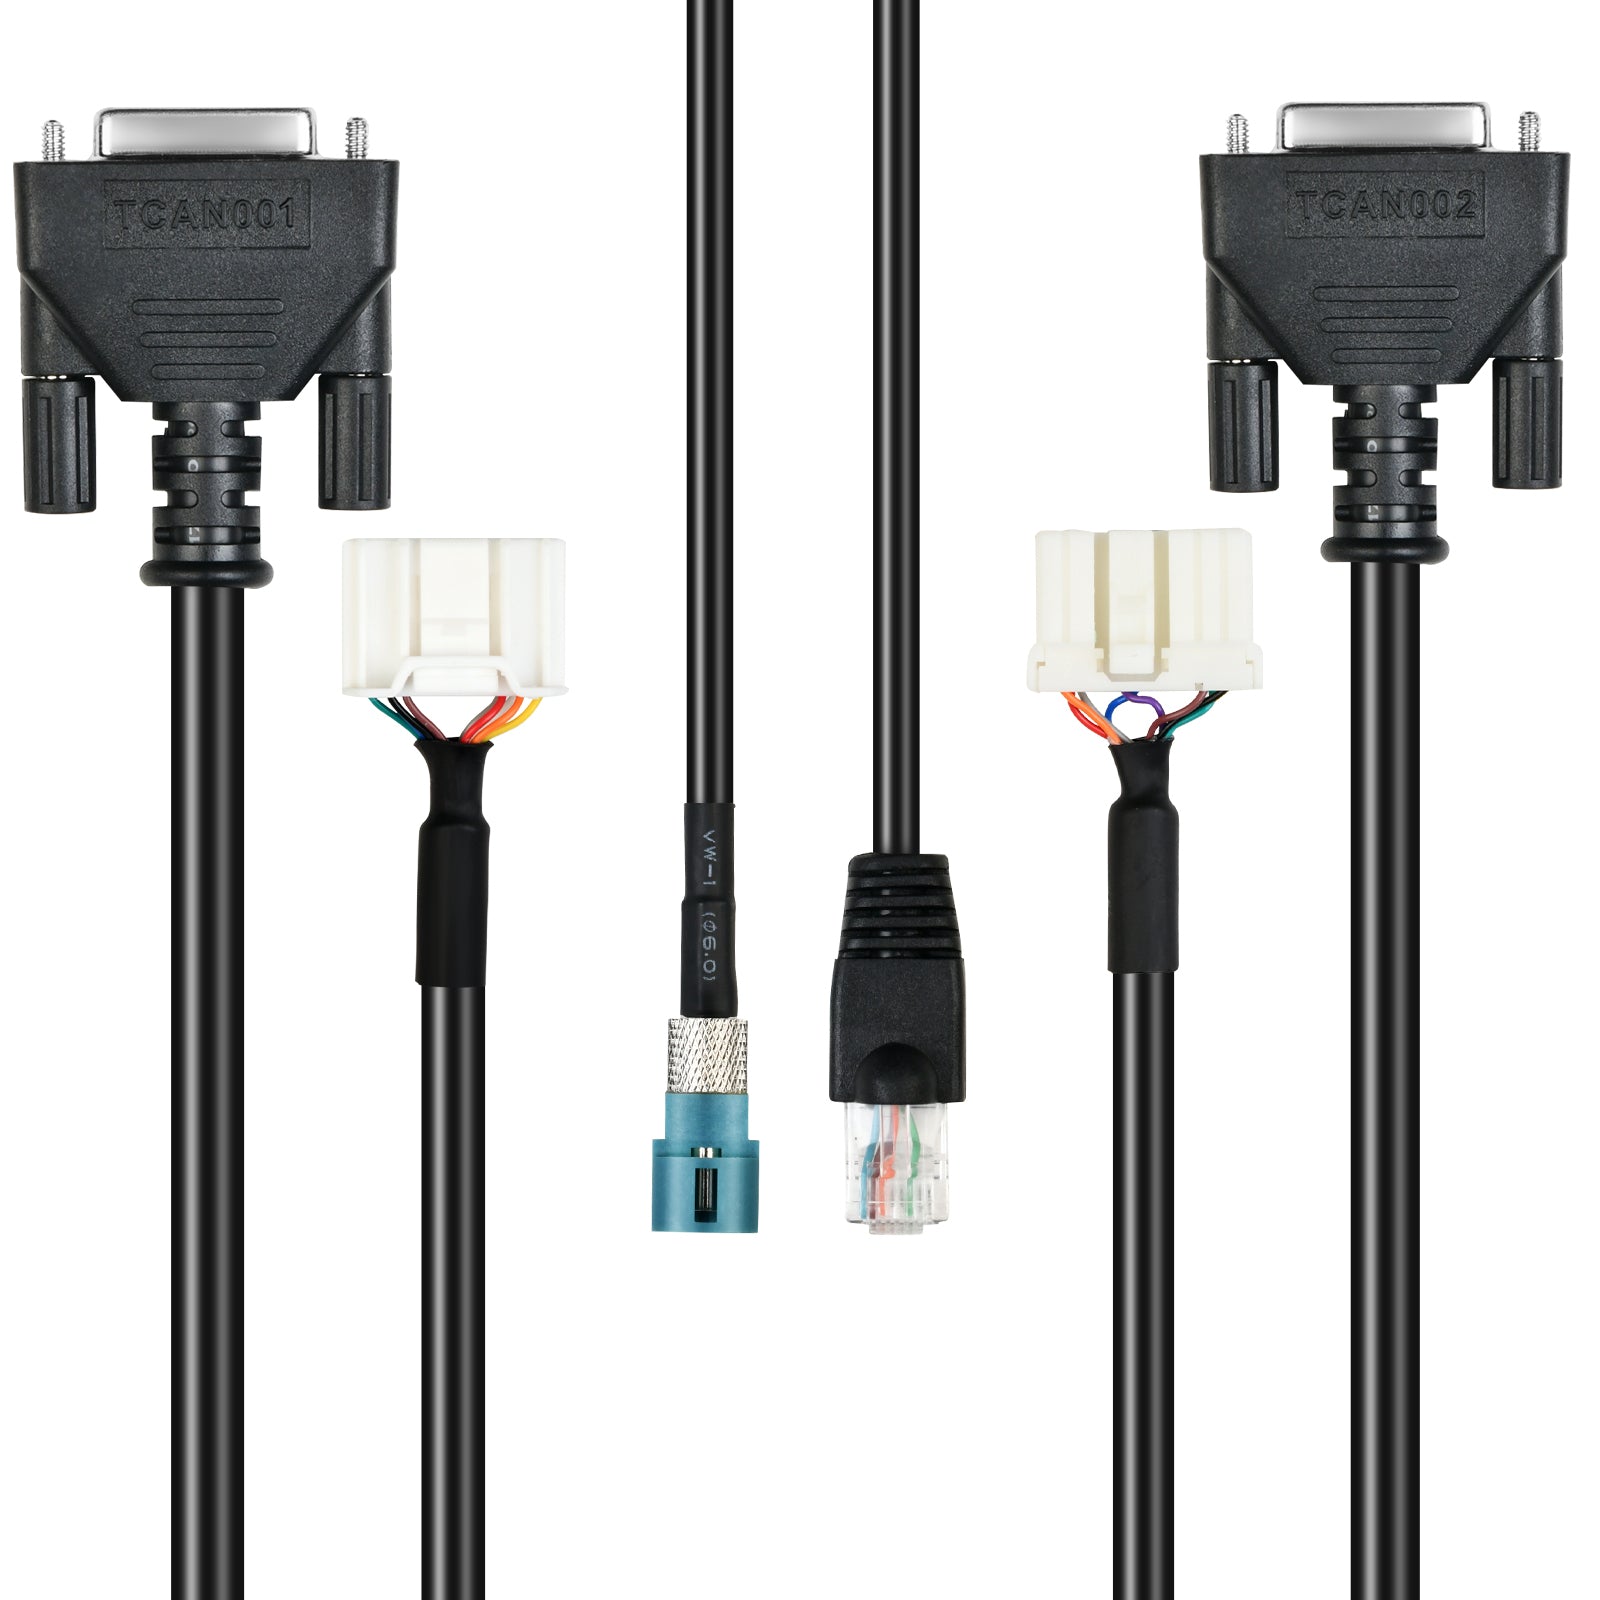 Tesla OBD2 Diagnostic Tools Cable Adapter